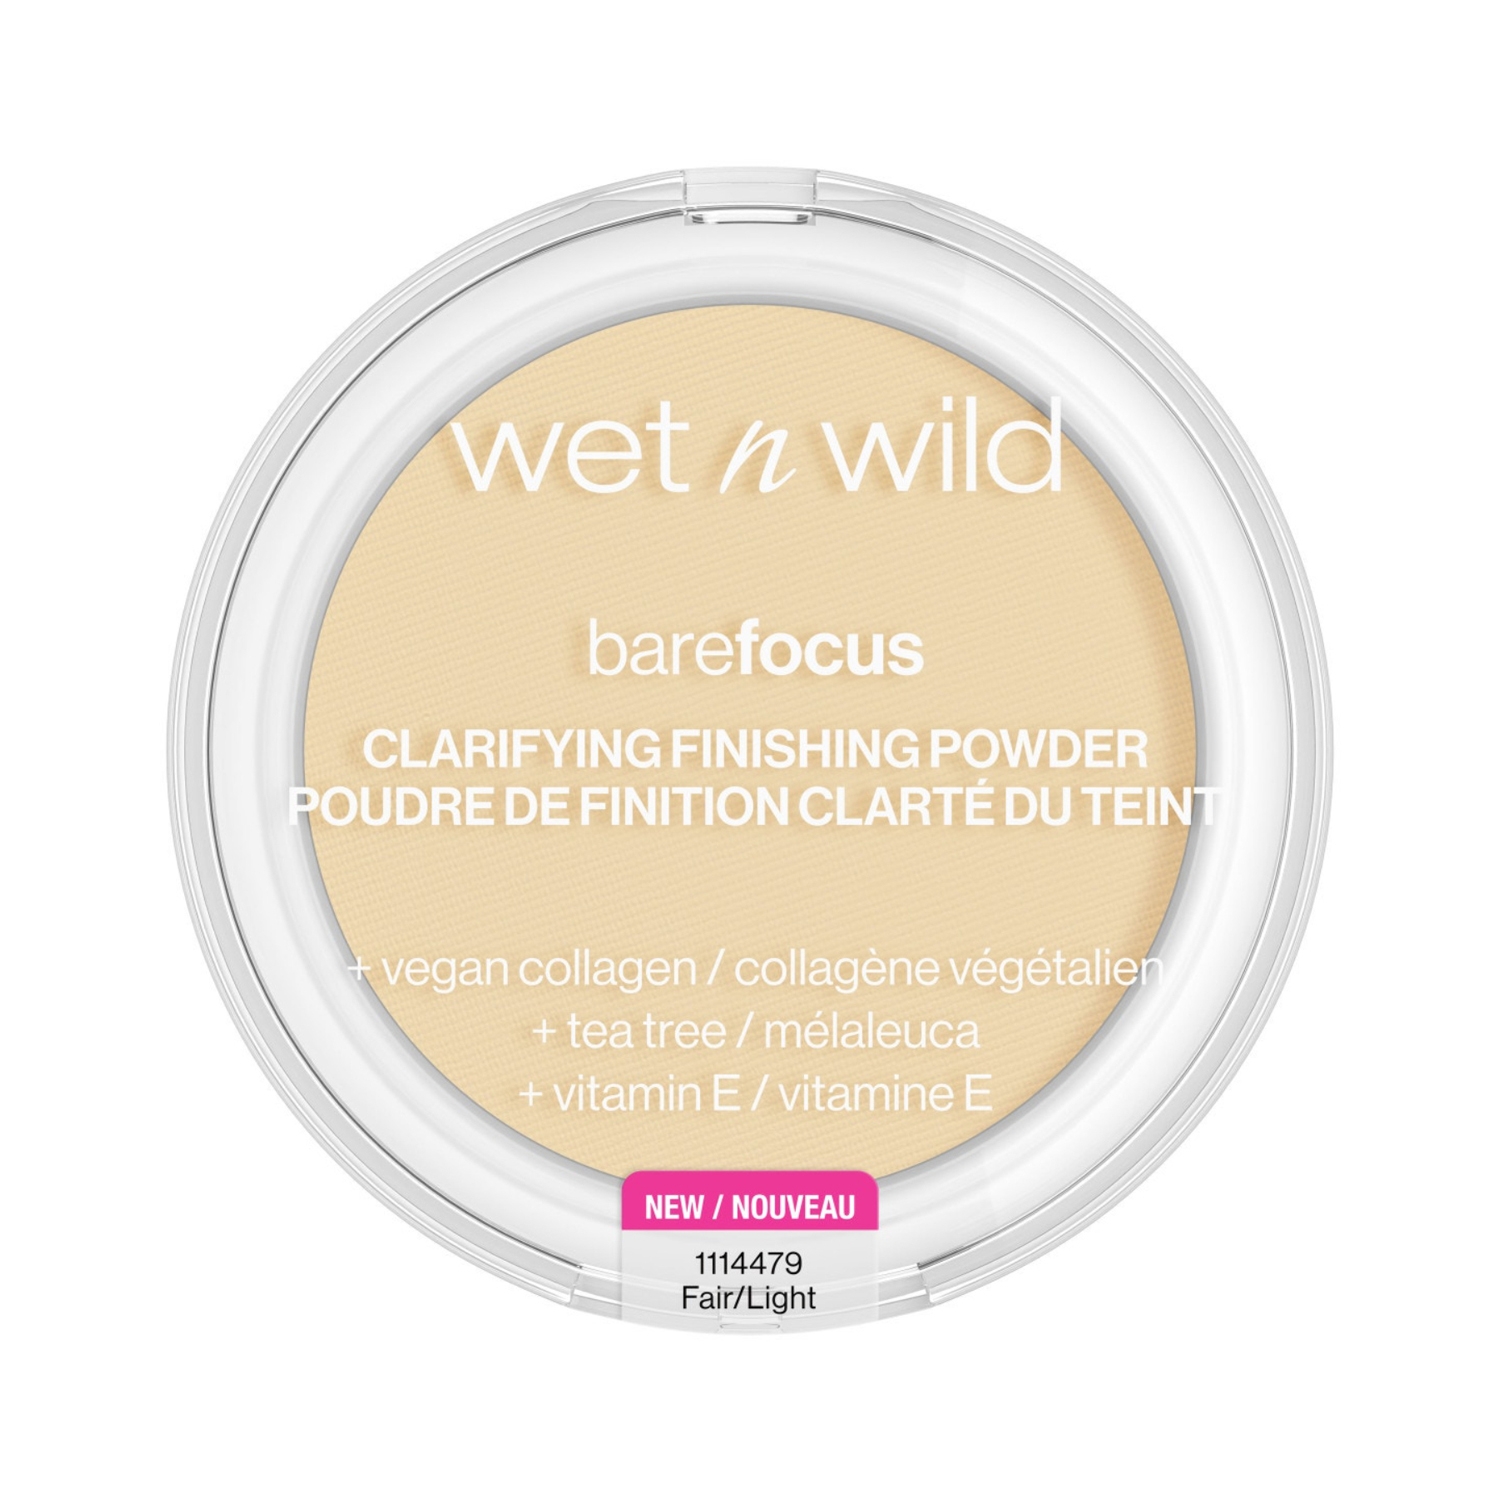 Wet n Wild | Wet n Wild Bare Focus Clarifying Finishing Powder - Fair/Light (7.8g)